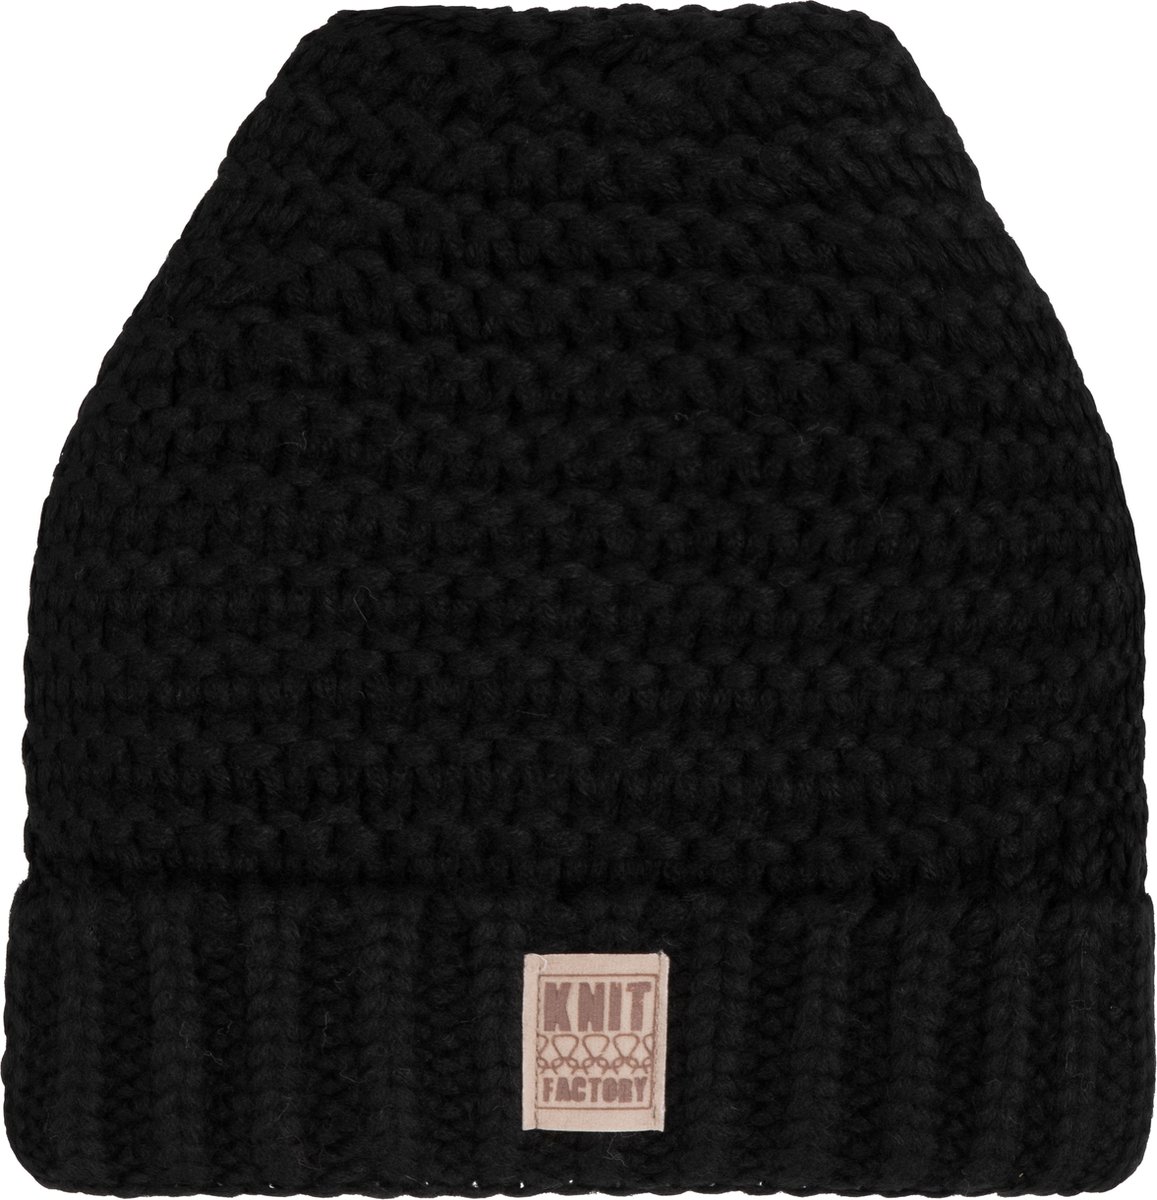 Knit Factory Alex Gebreide Muts Heren & Dames - Beanie hat - Zwart - Grofgebreid - Warme zwarte Wintermuts - Unisex - One Size